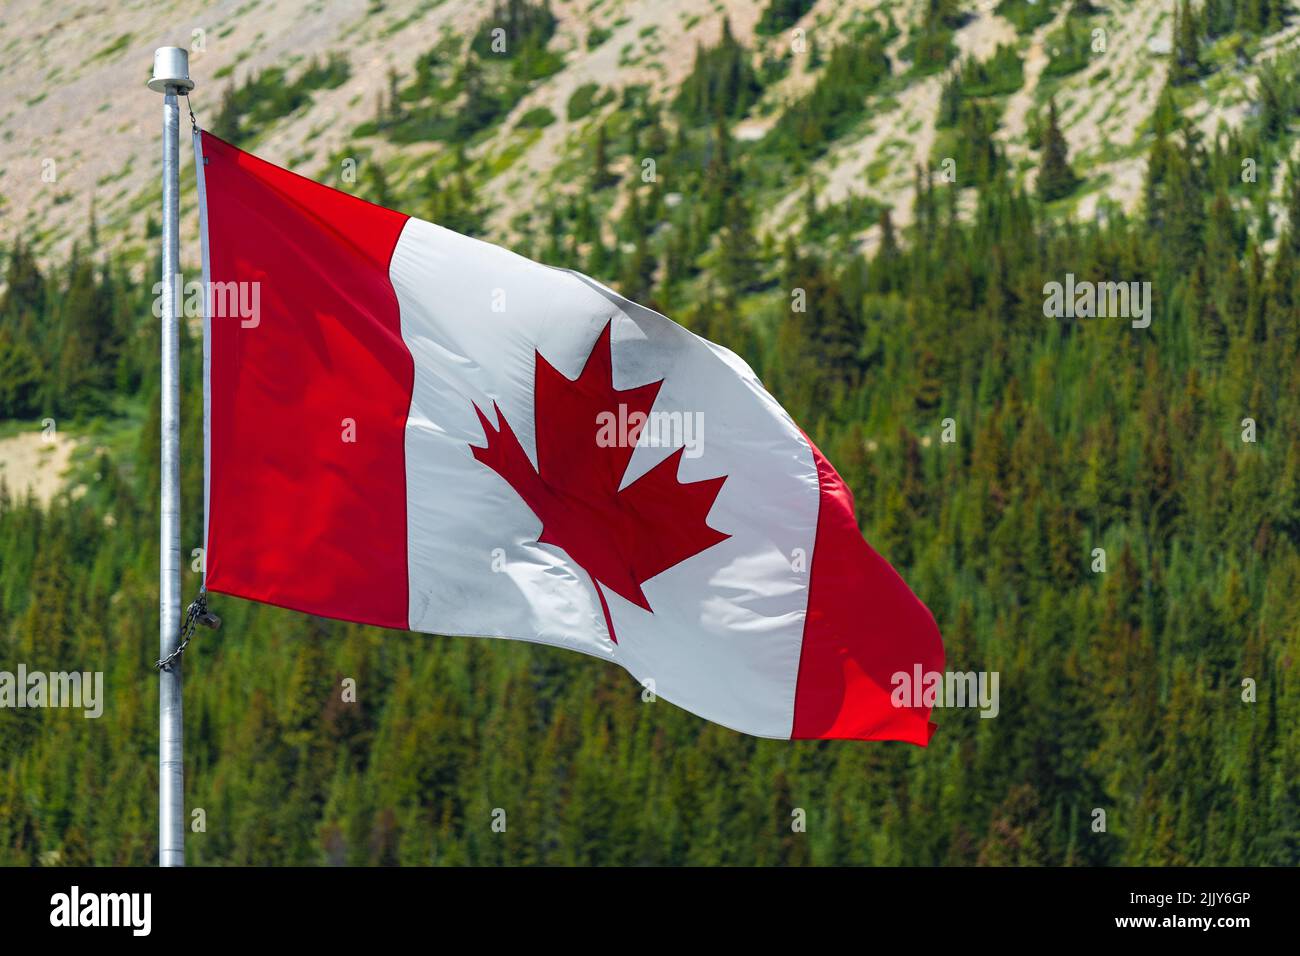 Drapeau canadien agitant dans le vent avec forêt de pins des montagnes Rocheuses, Canada. Banque D'Images